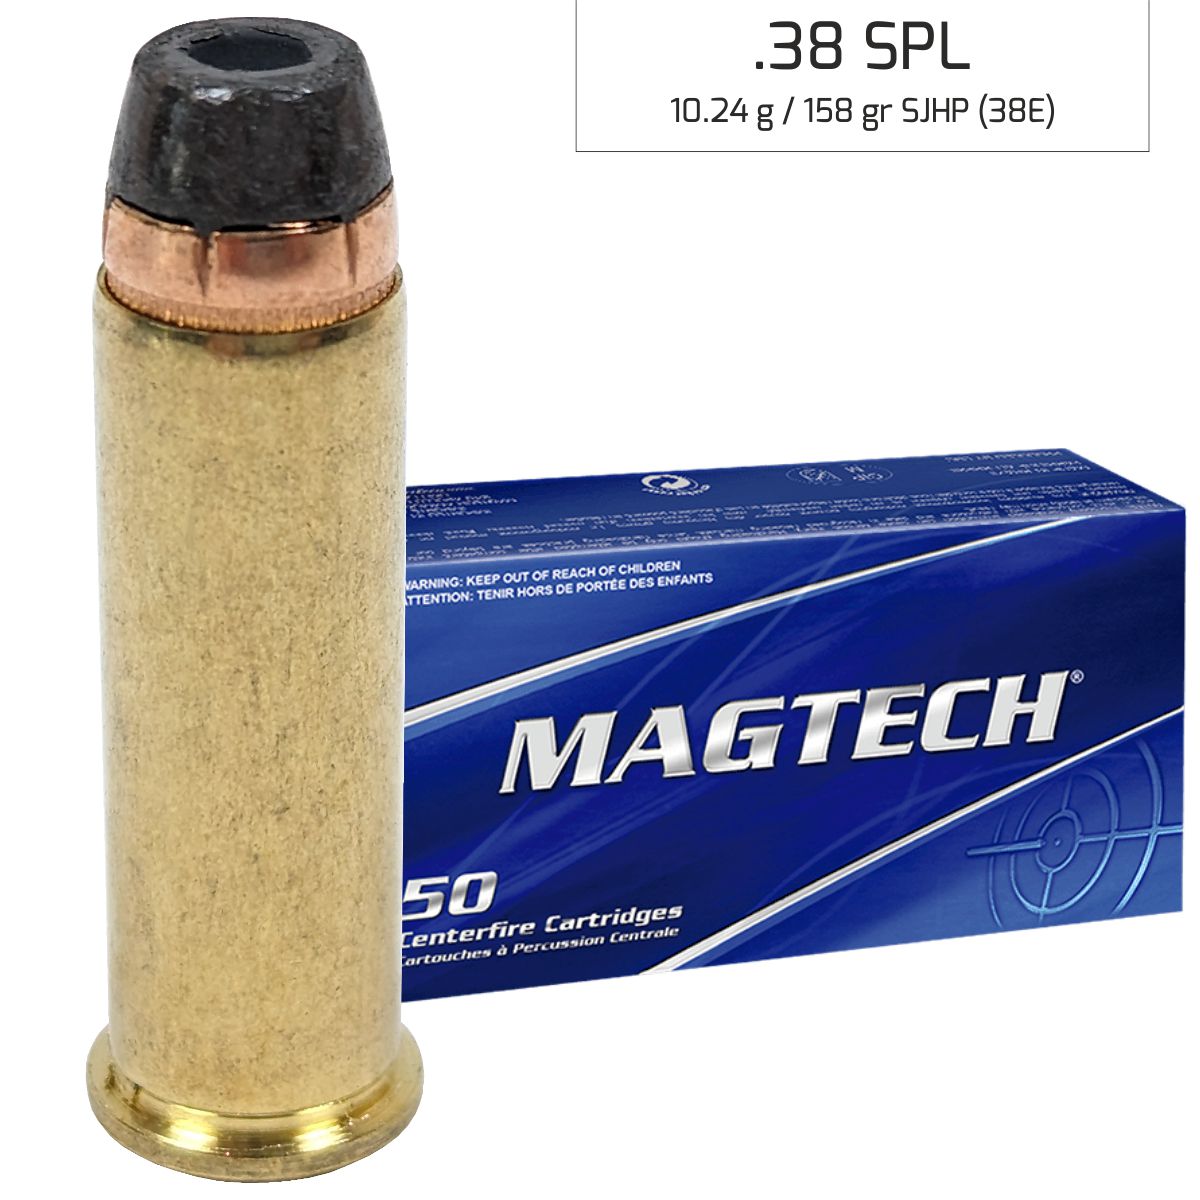 Náboj Magtech 38 SPECIAL FMJ FLAT (38Q) 8,1 g, 125 grs